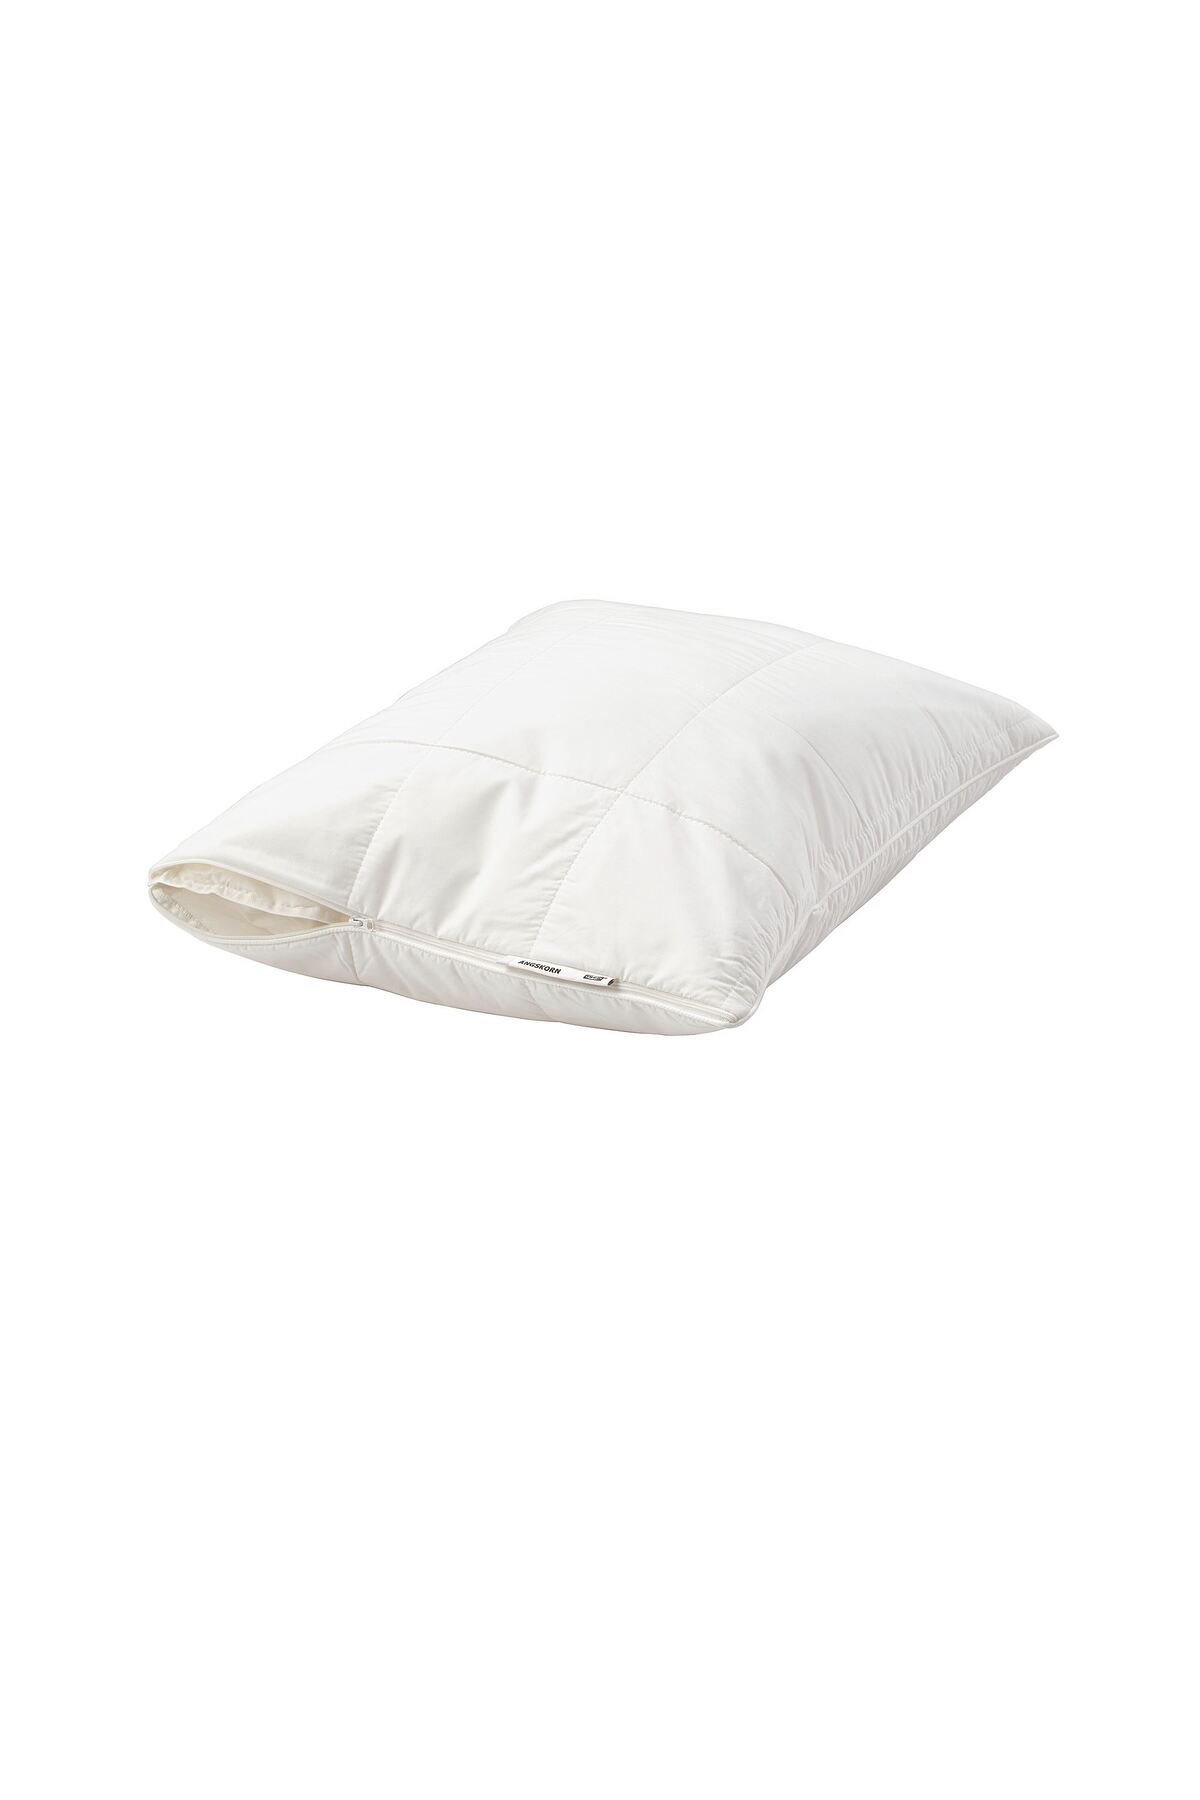 IKEA yastık alezi, 50x60 cm, liyosel lifli serin tutan yastık alezi